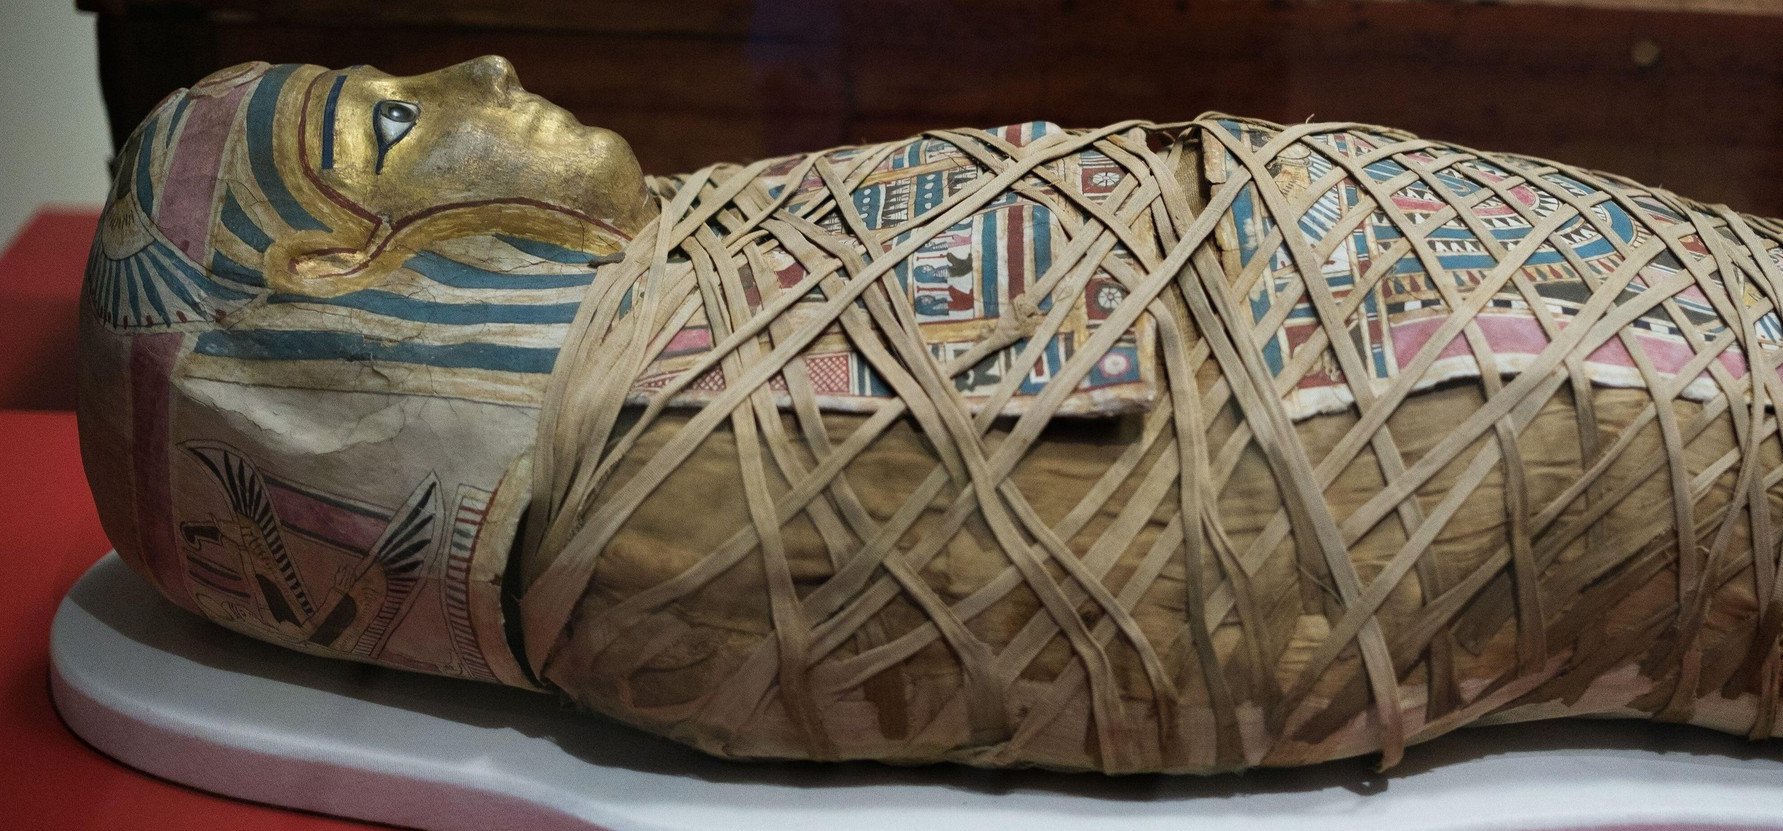 Néhány múmia szájában váratlan dolgot találtak, a régészeket is teljesen összezavarta az eset